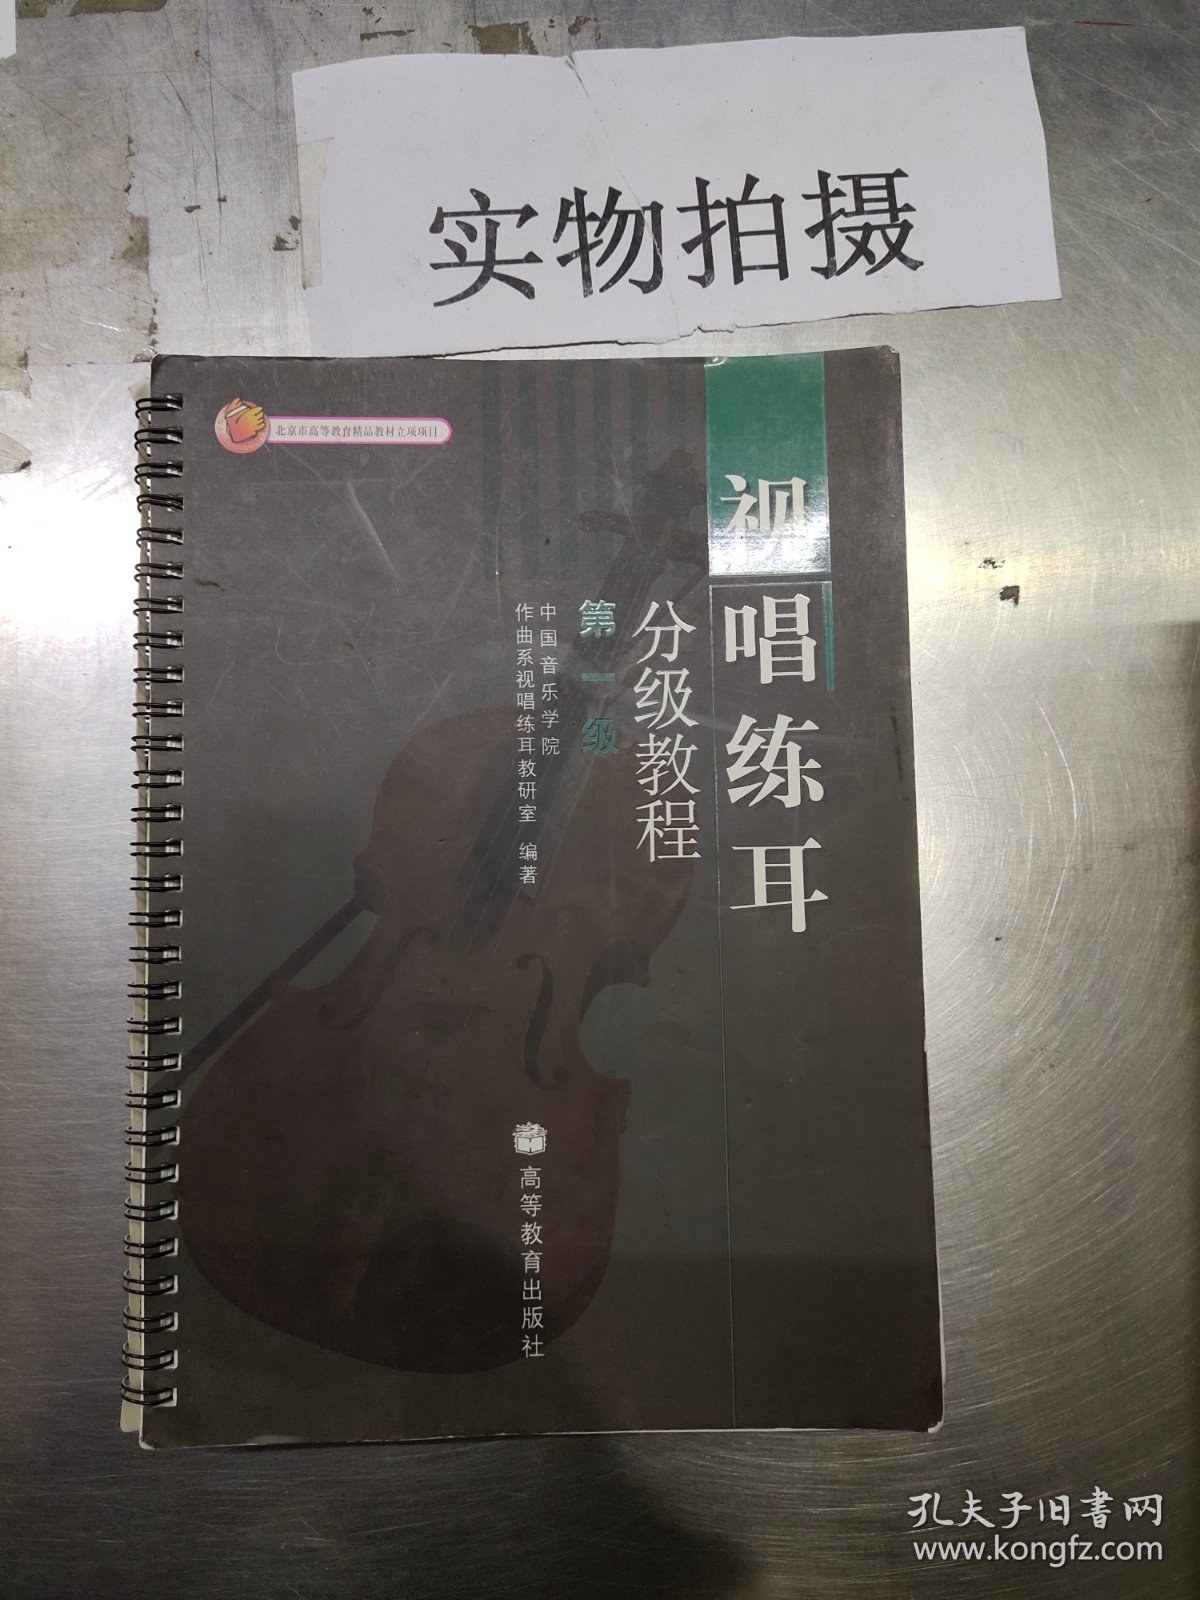 视唱练耳分级教程一级 中国音乐学院作曲系视唱练耳 高等教育出版9787040138740